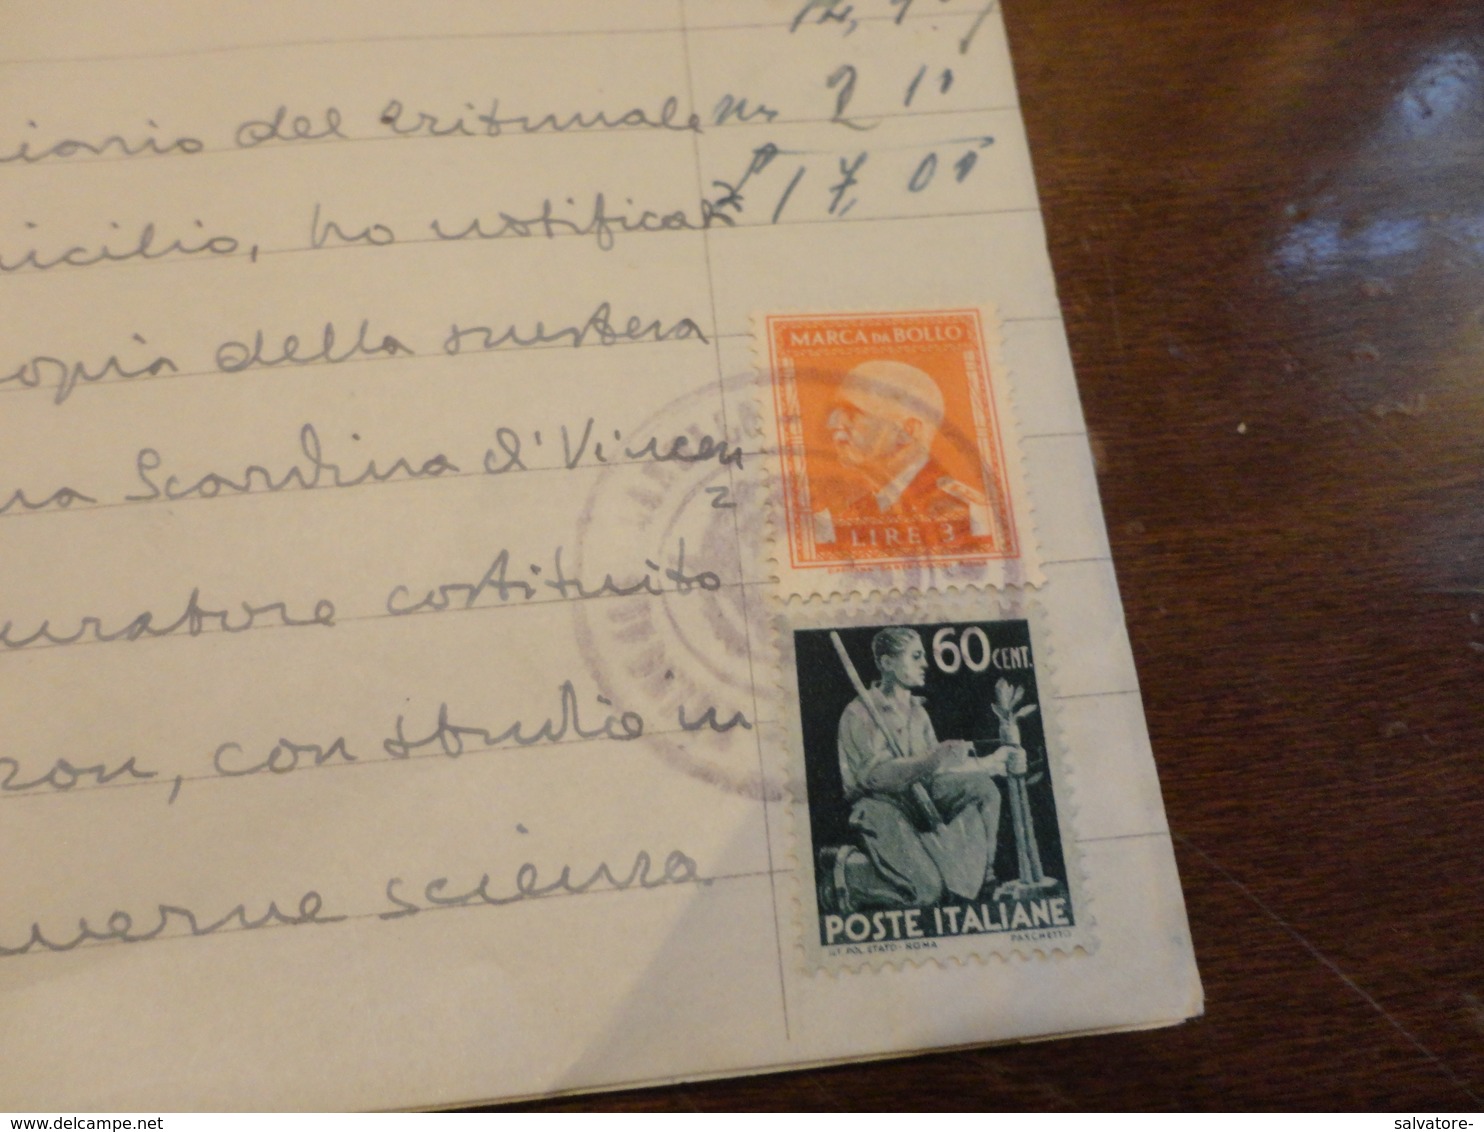 FRANCOBOLLO LUOGOTENENZA CENTESIMI 60 USATO COME FISCALE + MARCA DA BOLLO LIRE 8-DICEMBRE 1945 - Steuermarken